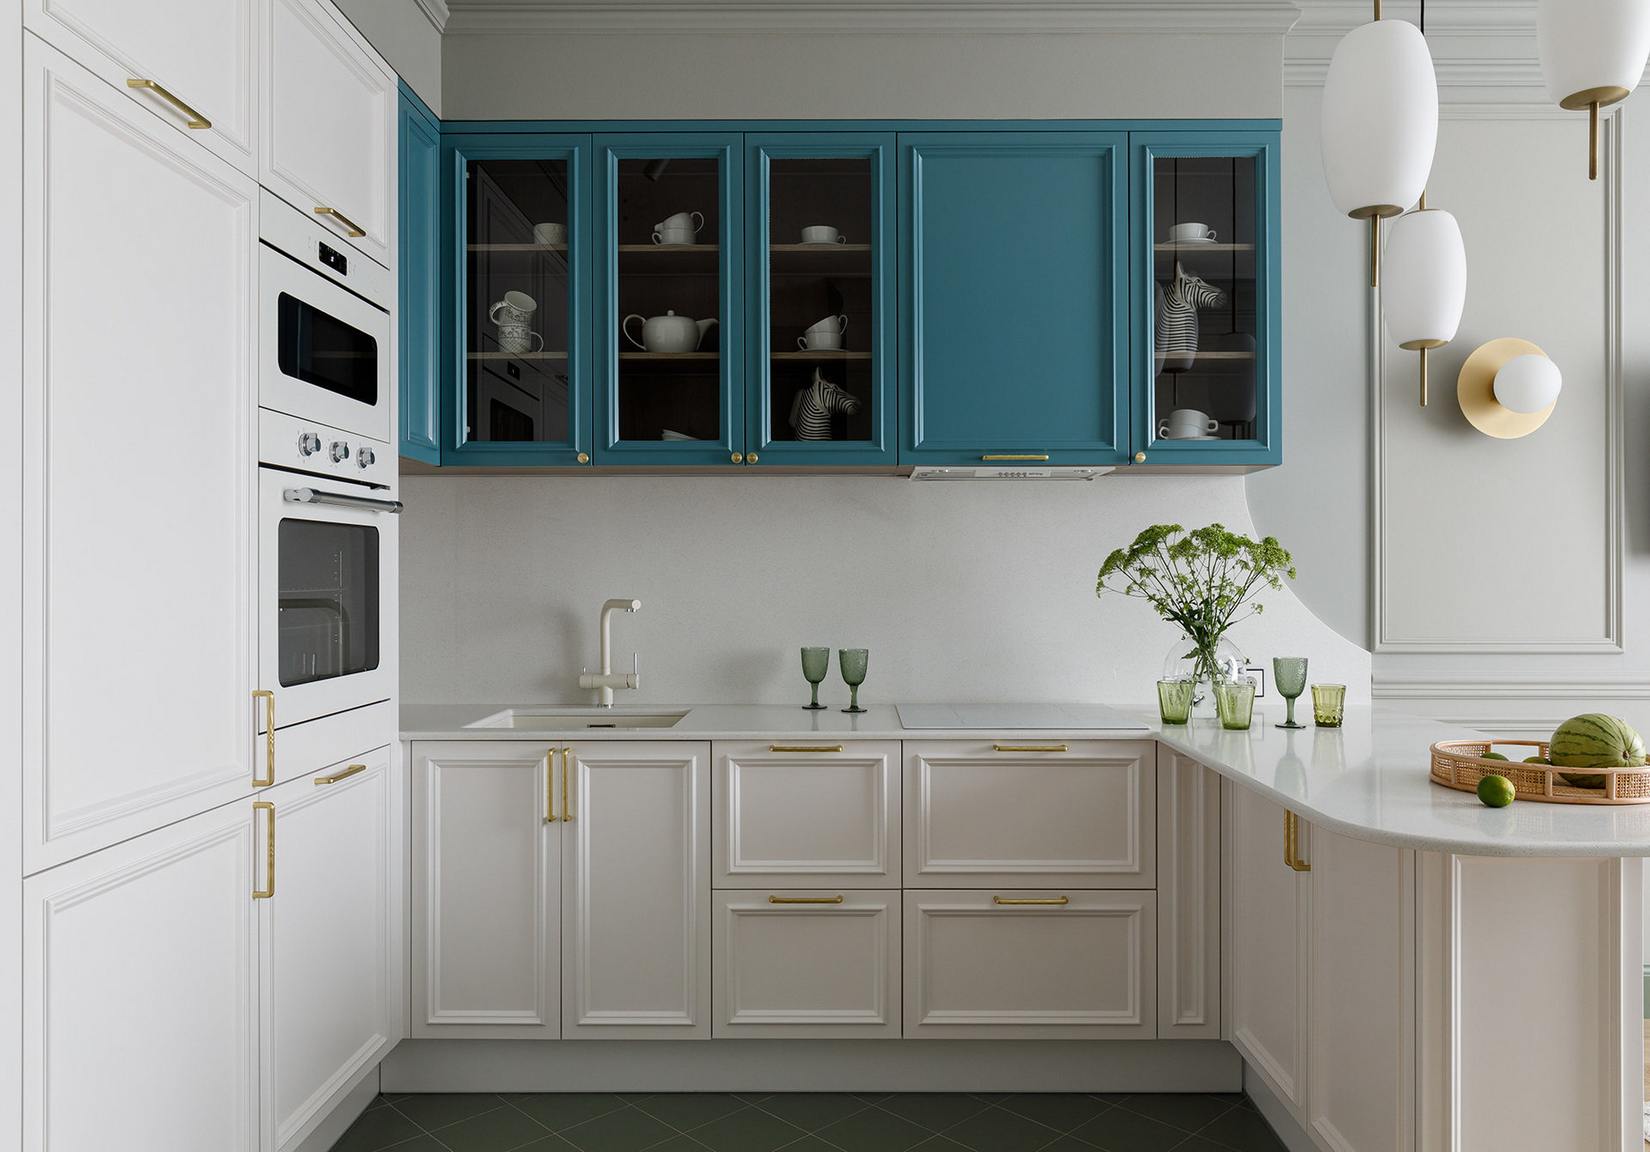 Nội thất phòng bếp được thiết kế với đường nét gọn gàng, hệ tủ lưu trữ bên dưới và nền tường màu trắng đối lập với tủ bếp trên chọn gam màu xanh thời thượng. Những chi tiết mạ vàng đồng ở tay nắm cửa tủ cũng nhấn nhá cho bếp thêm sang trọng.